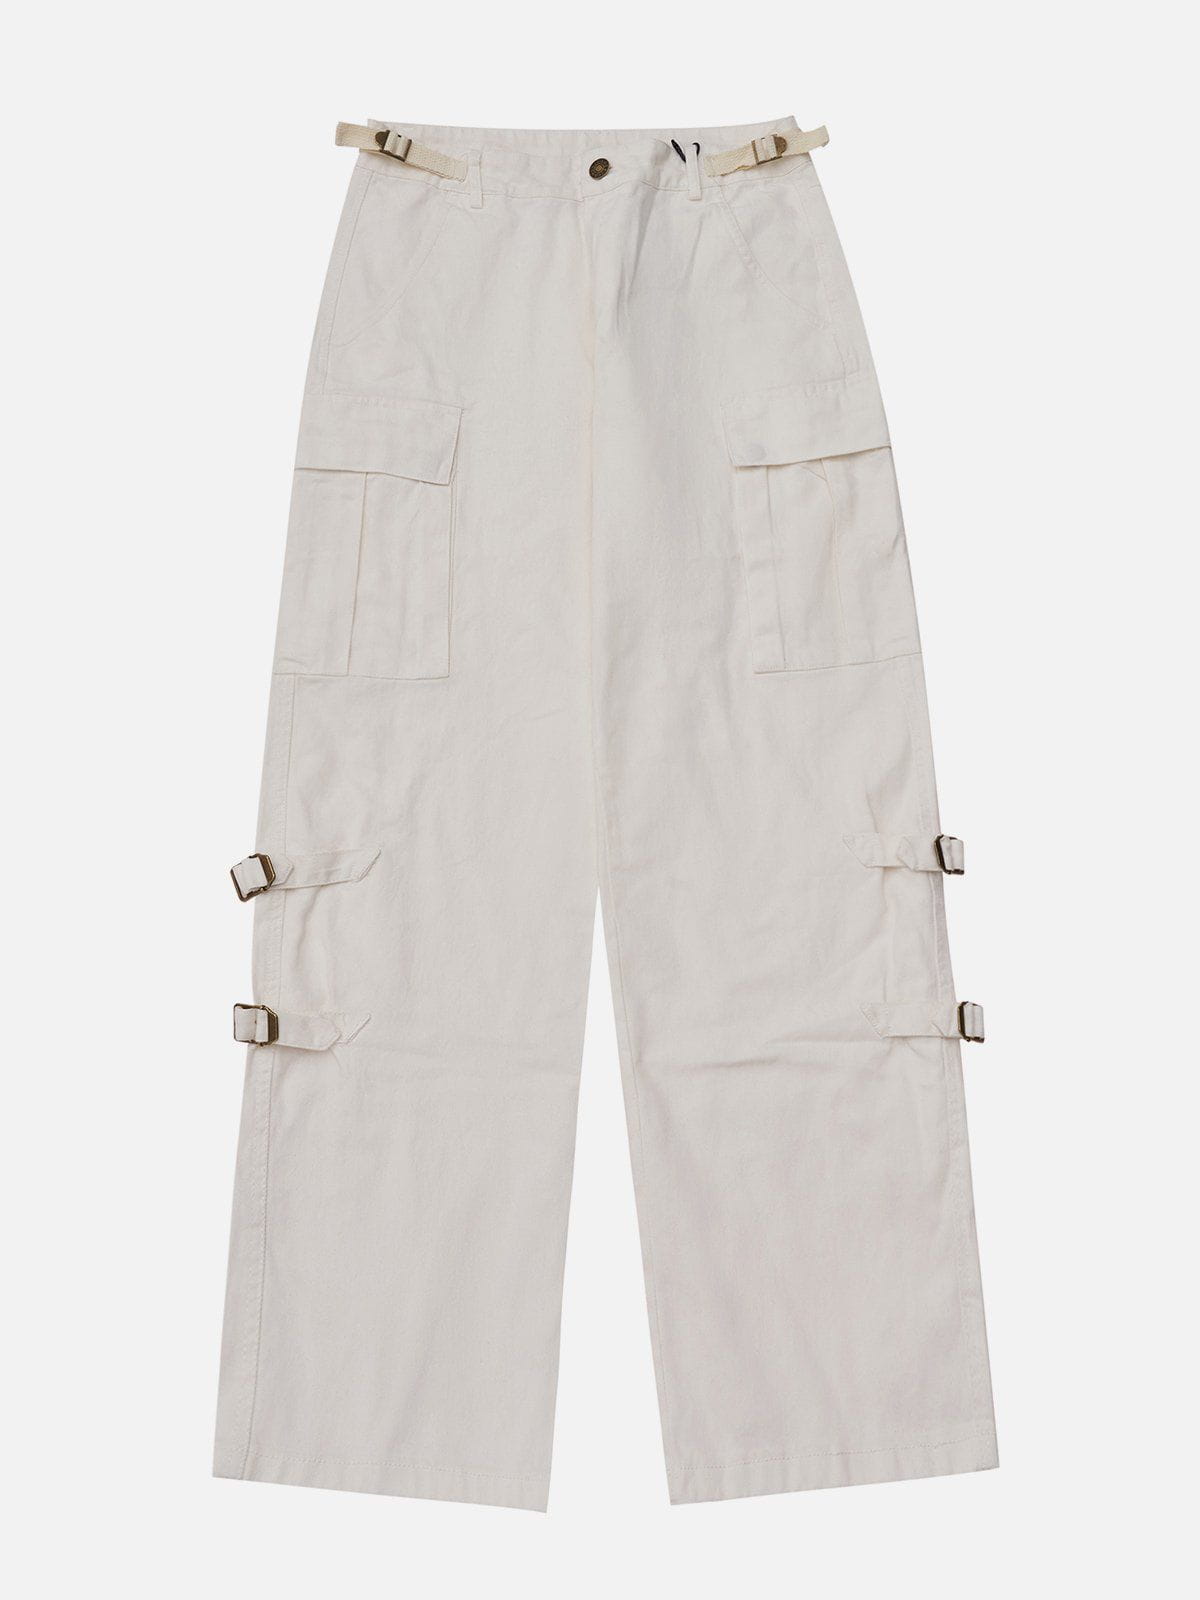 Eprezzy® - Pockets with Flap Pants Streetwear Fashion - eprezzy.com